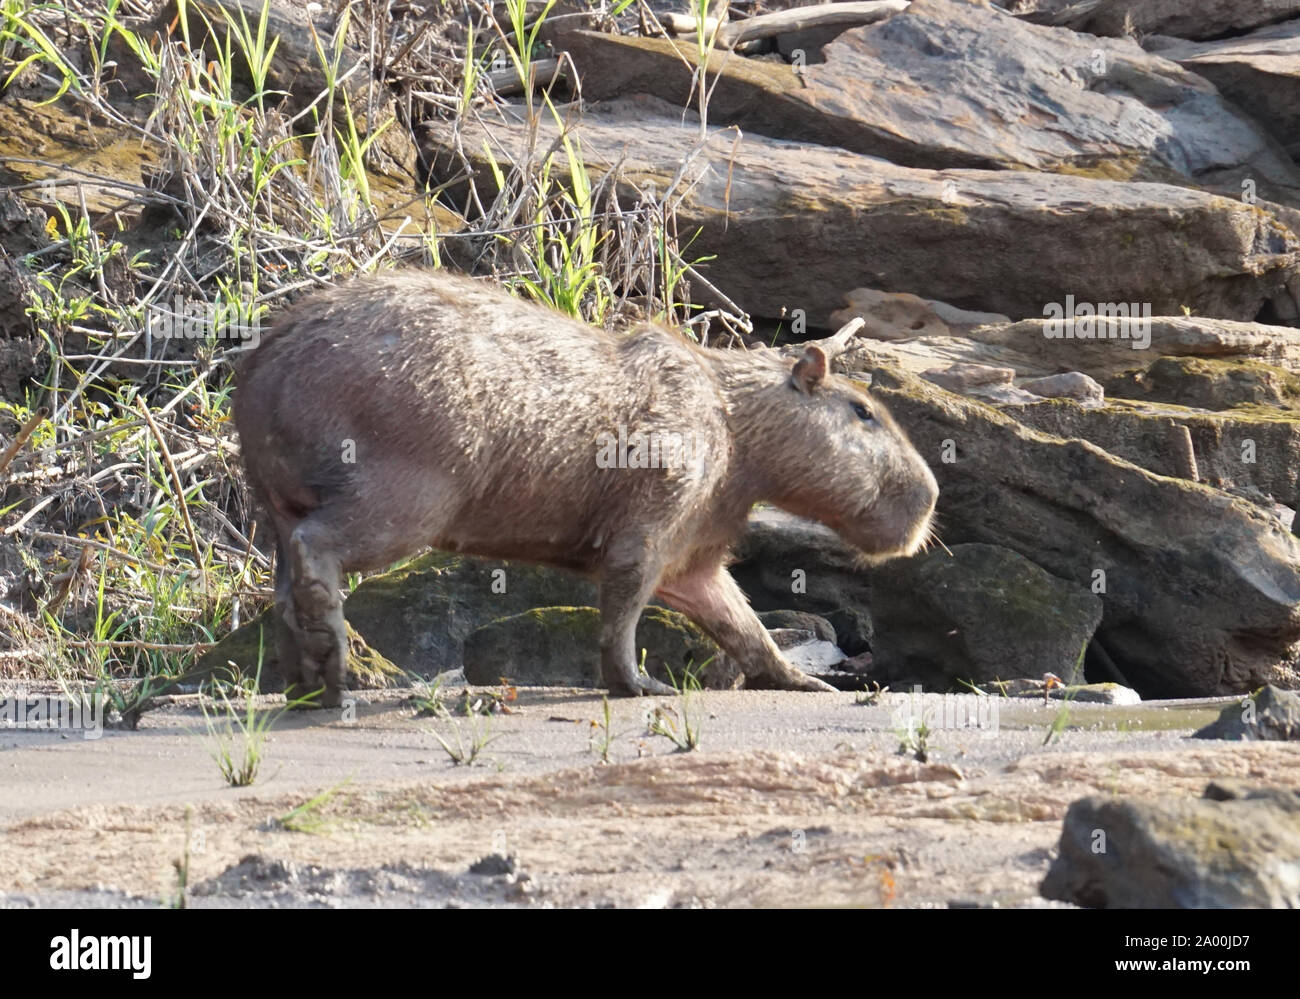 Le capybara (Hydrochoerus hydrochaeris) est un mammifère originaire d'Amérique du Sud. C'est le plus gros rongeur du monde. Également appelé chigüire, chigüiro et carpincho, c'est un animal sauvage photographié sur les rives du fleuve Amazone. Banque D'Images